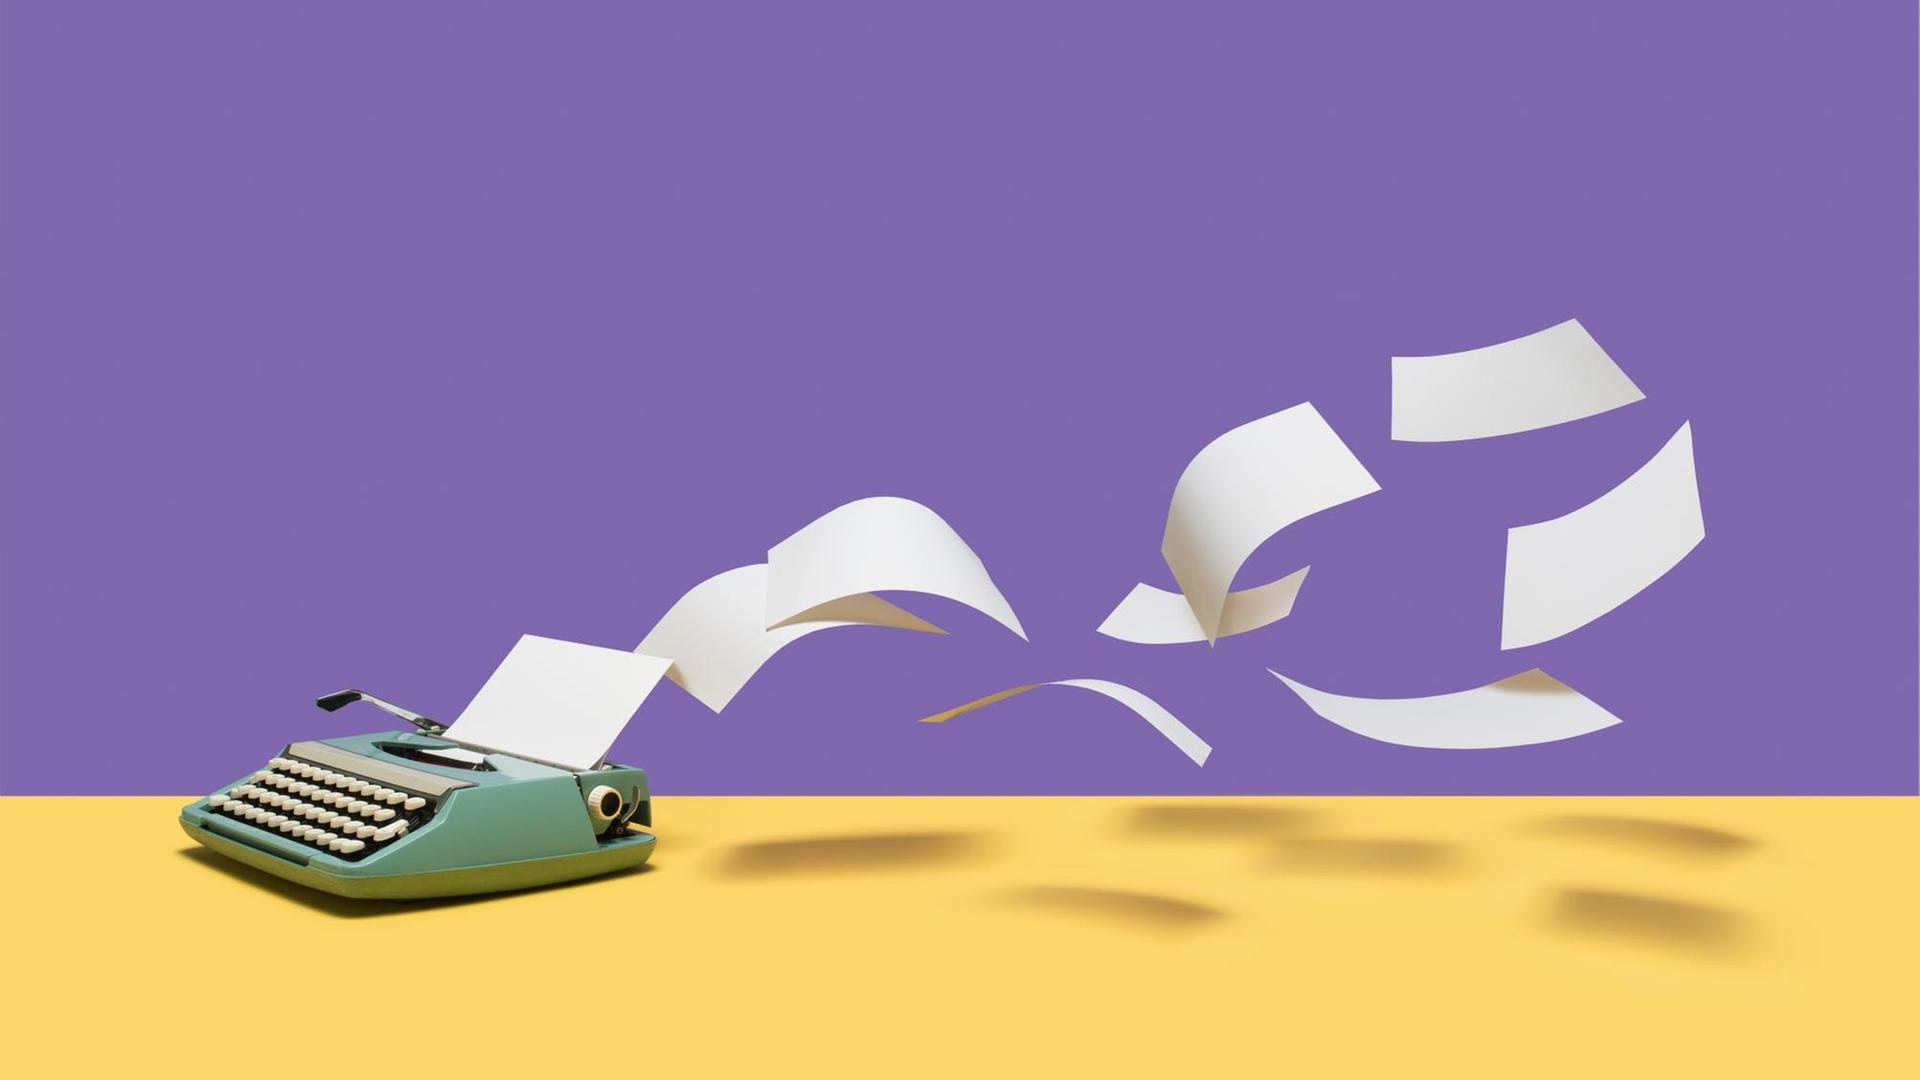 Vor einem gelb-lila Hintergrund steht eine Vintage-Schreibmaschine aus der viele weiße Blätter fliegen.